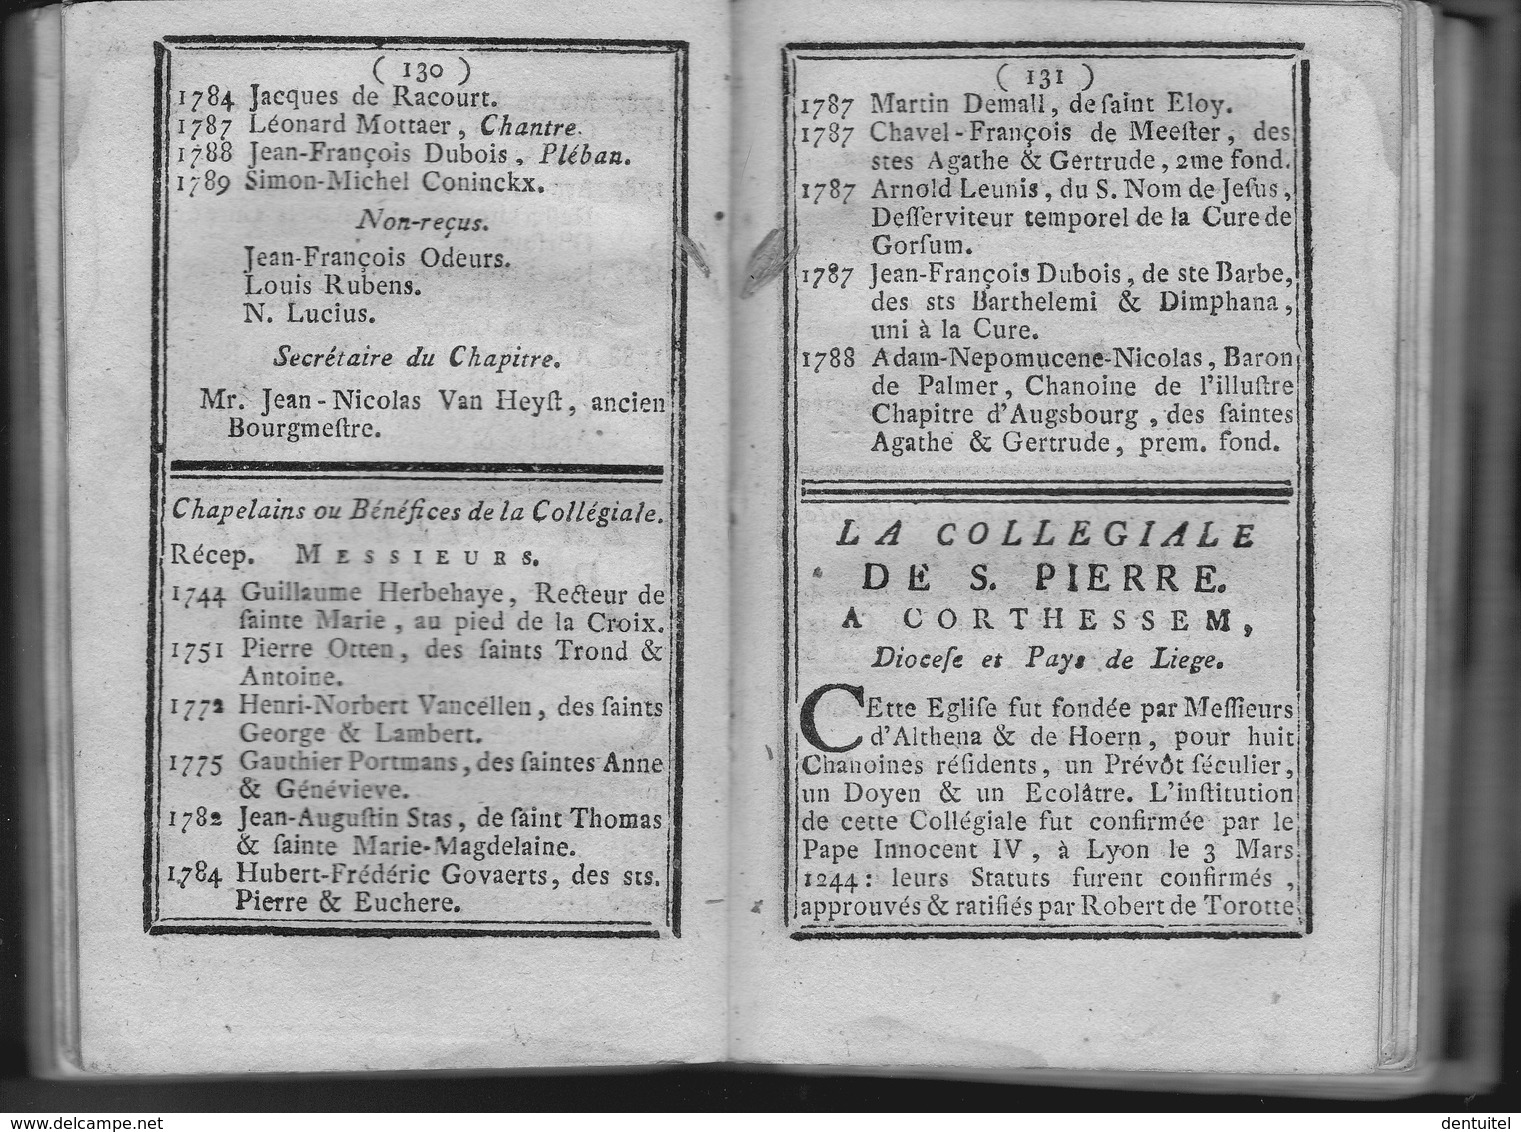 Tableau ecclésiastique de la ville et diocèse de Liège / pour l’an M. DCC. XCIV - 1794